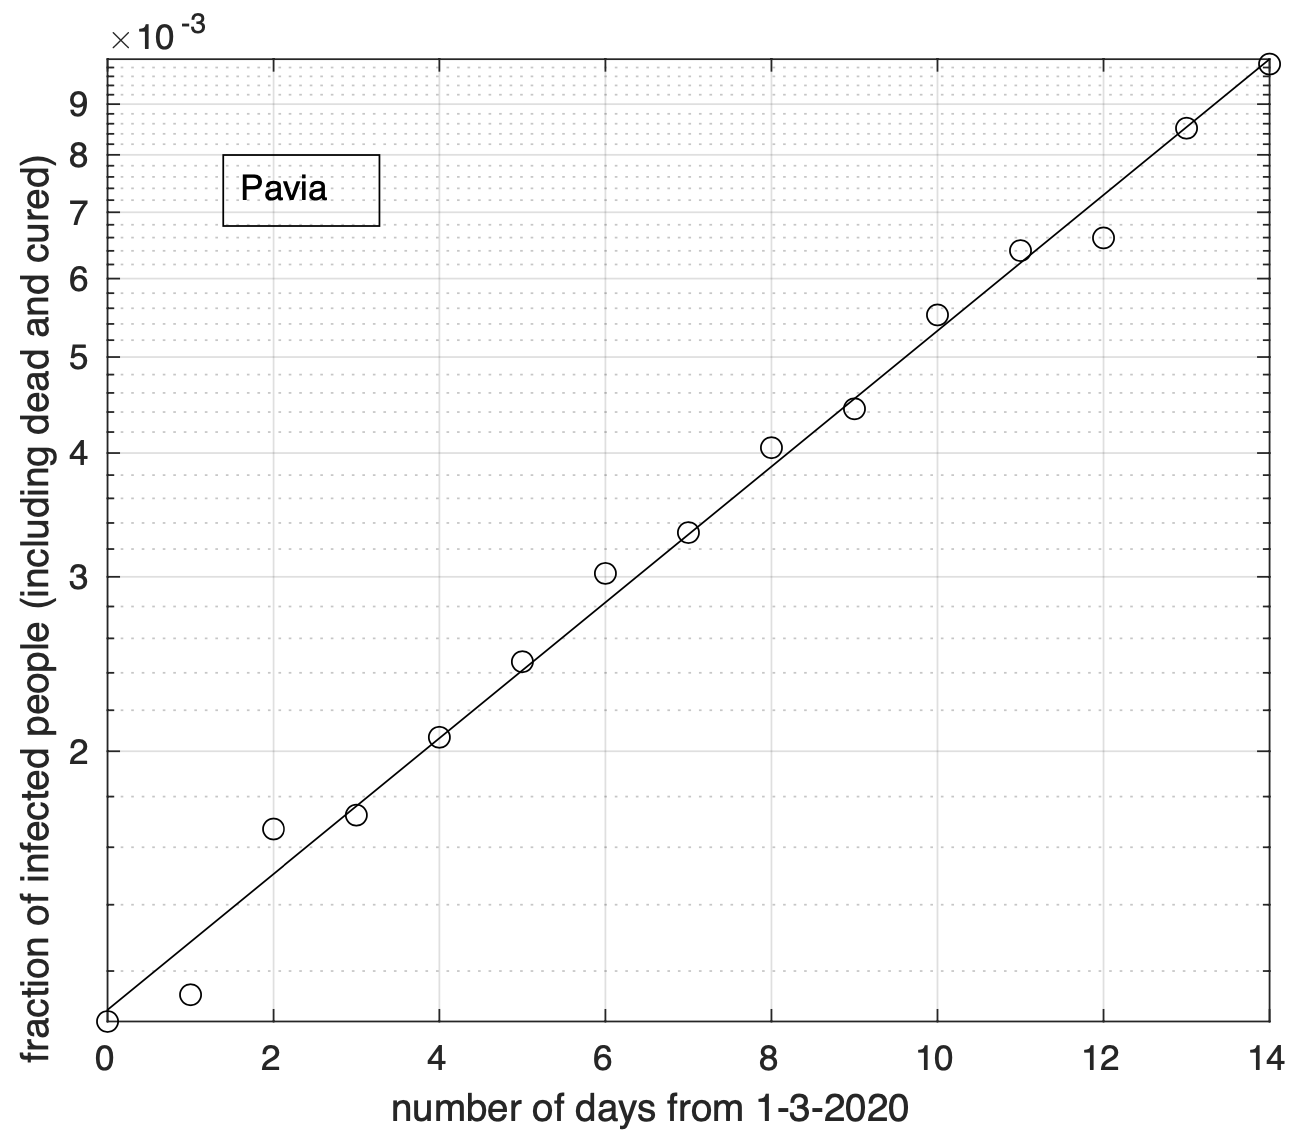 Figure 3. Sequenza temporale della frazione dei contagiati osservati nella provincia di Pavia rispetto alla popolazione della provincia (in scala semi-logaritmica). Il miglior fit con un modello geometrico è sovrapposto ai dati.